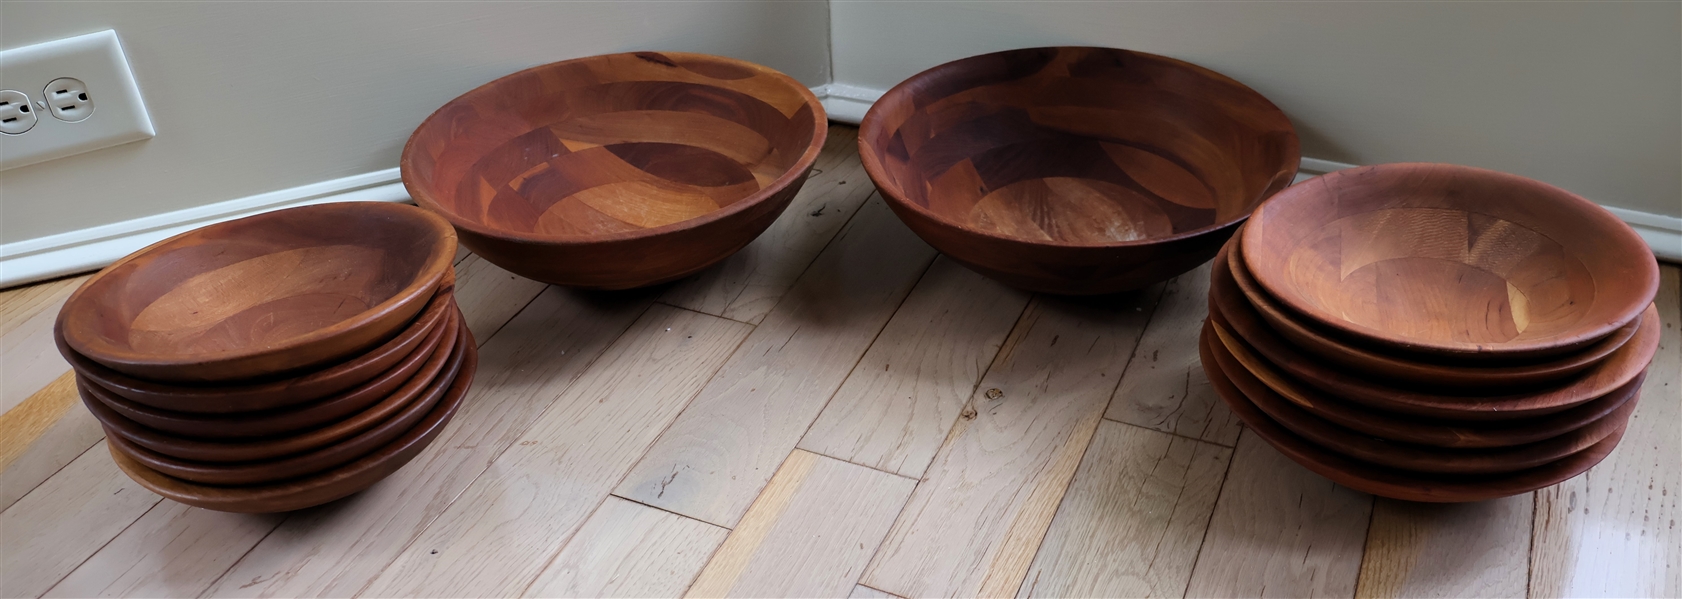 14 Wood Bowls - 2 Large Salad Bowls and 12 Smaller Bowls - Large Bowls Measure 12" Across and Smaller Measure 8 1/2" Across